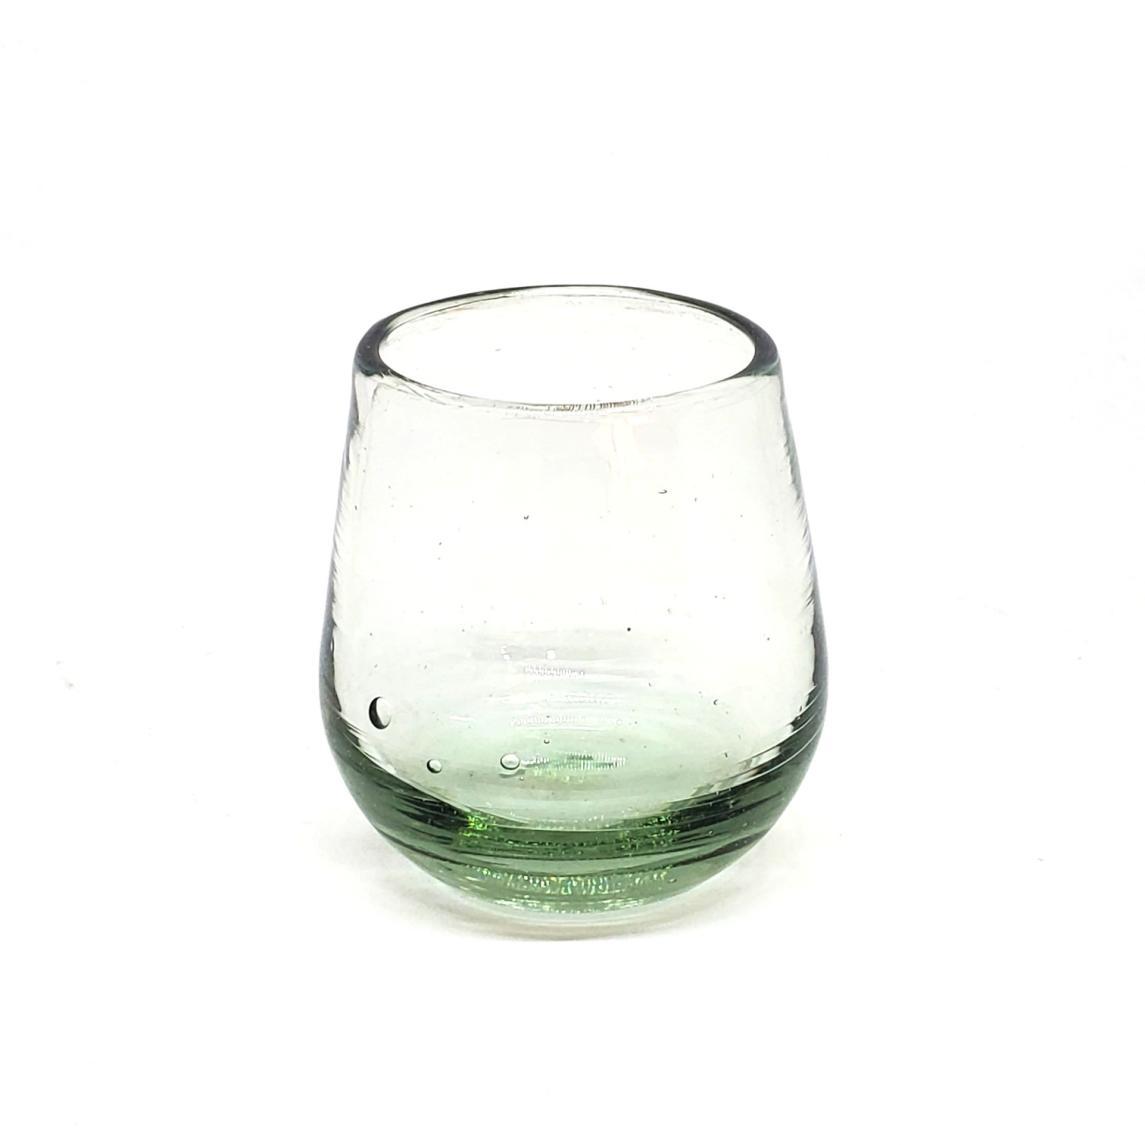 VIDRIO SOPLADO / Vasos Roly Poly Transparente (Juego de 6) / Nuestros vasos transparentes son fabricados uno por uno a base de vidrio reciclado, hacindolos obras de arte nicas.